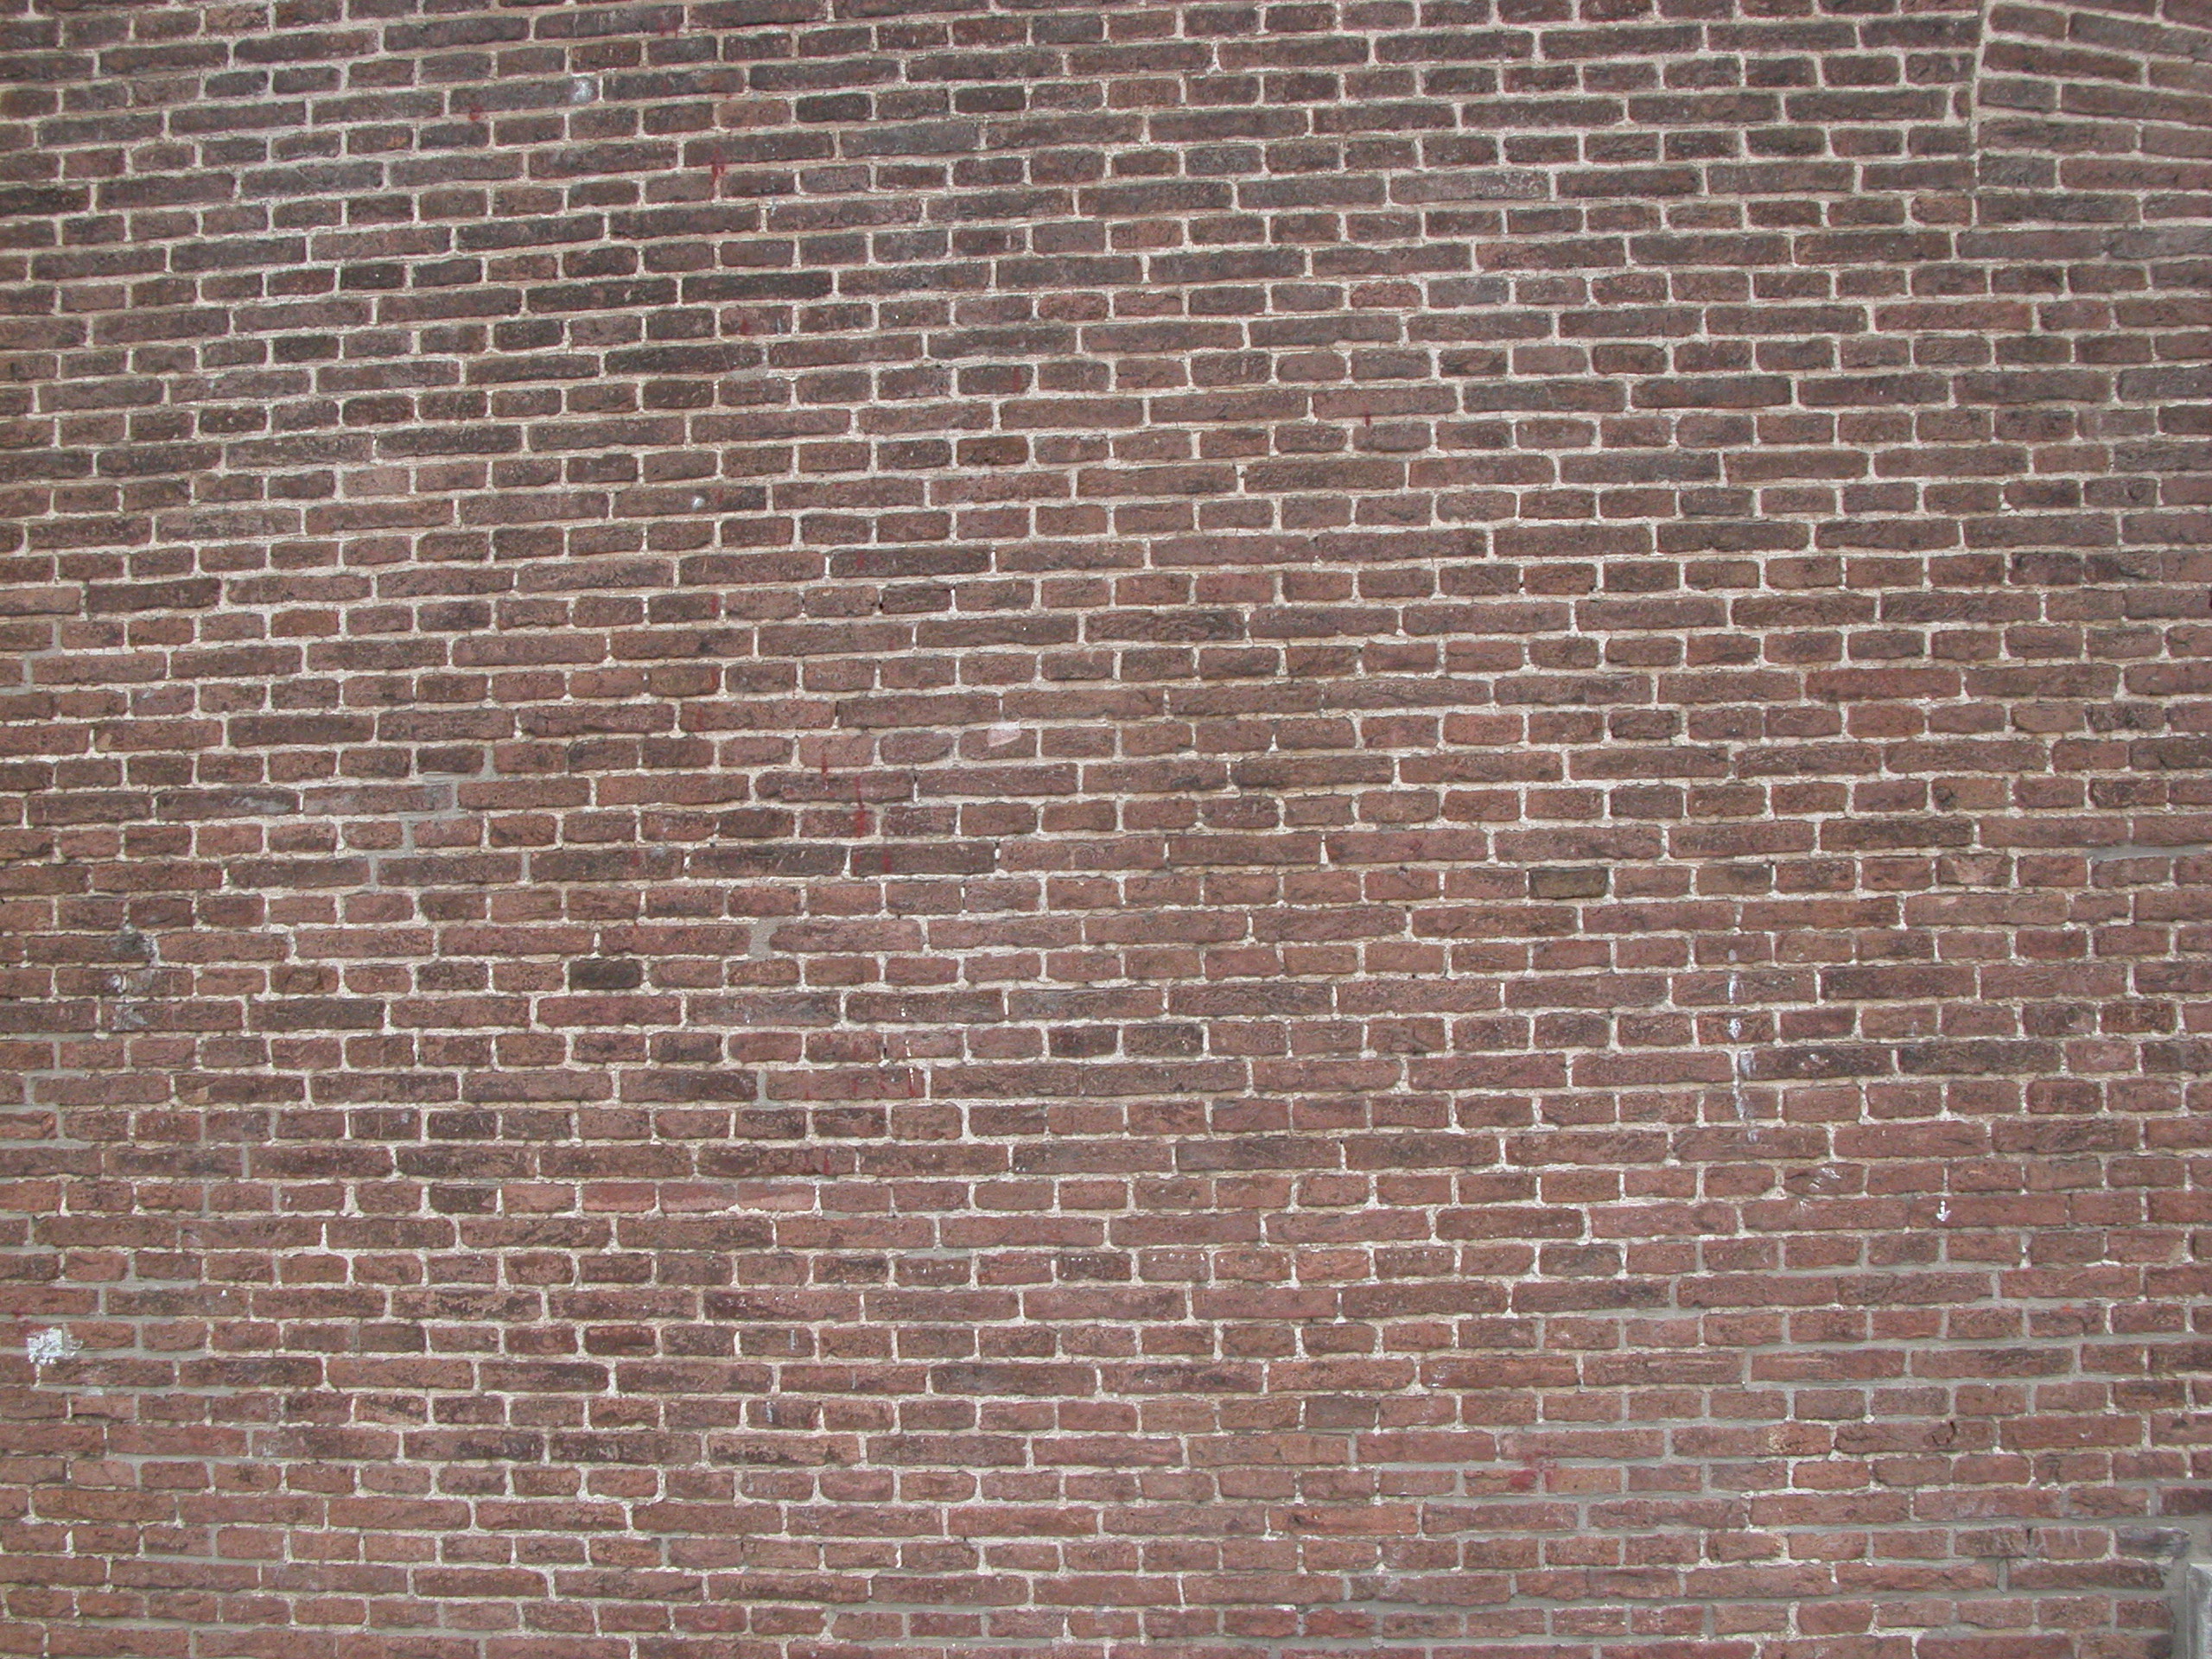 Image*After : Photos : Brick Wall Brickwall Bricks Flat Surface Hard ...